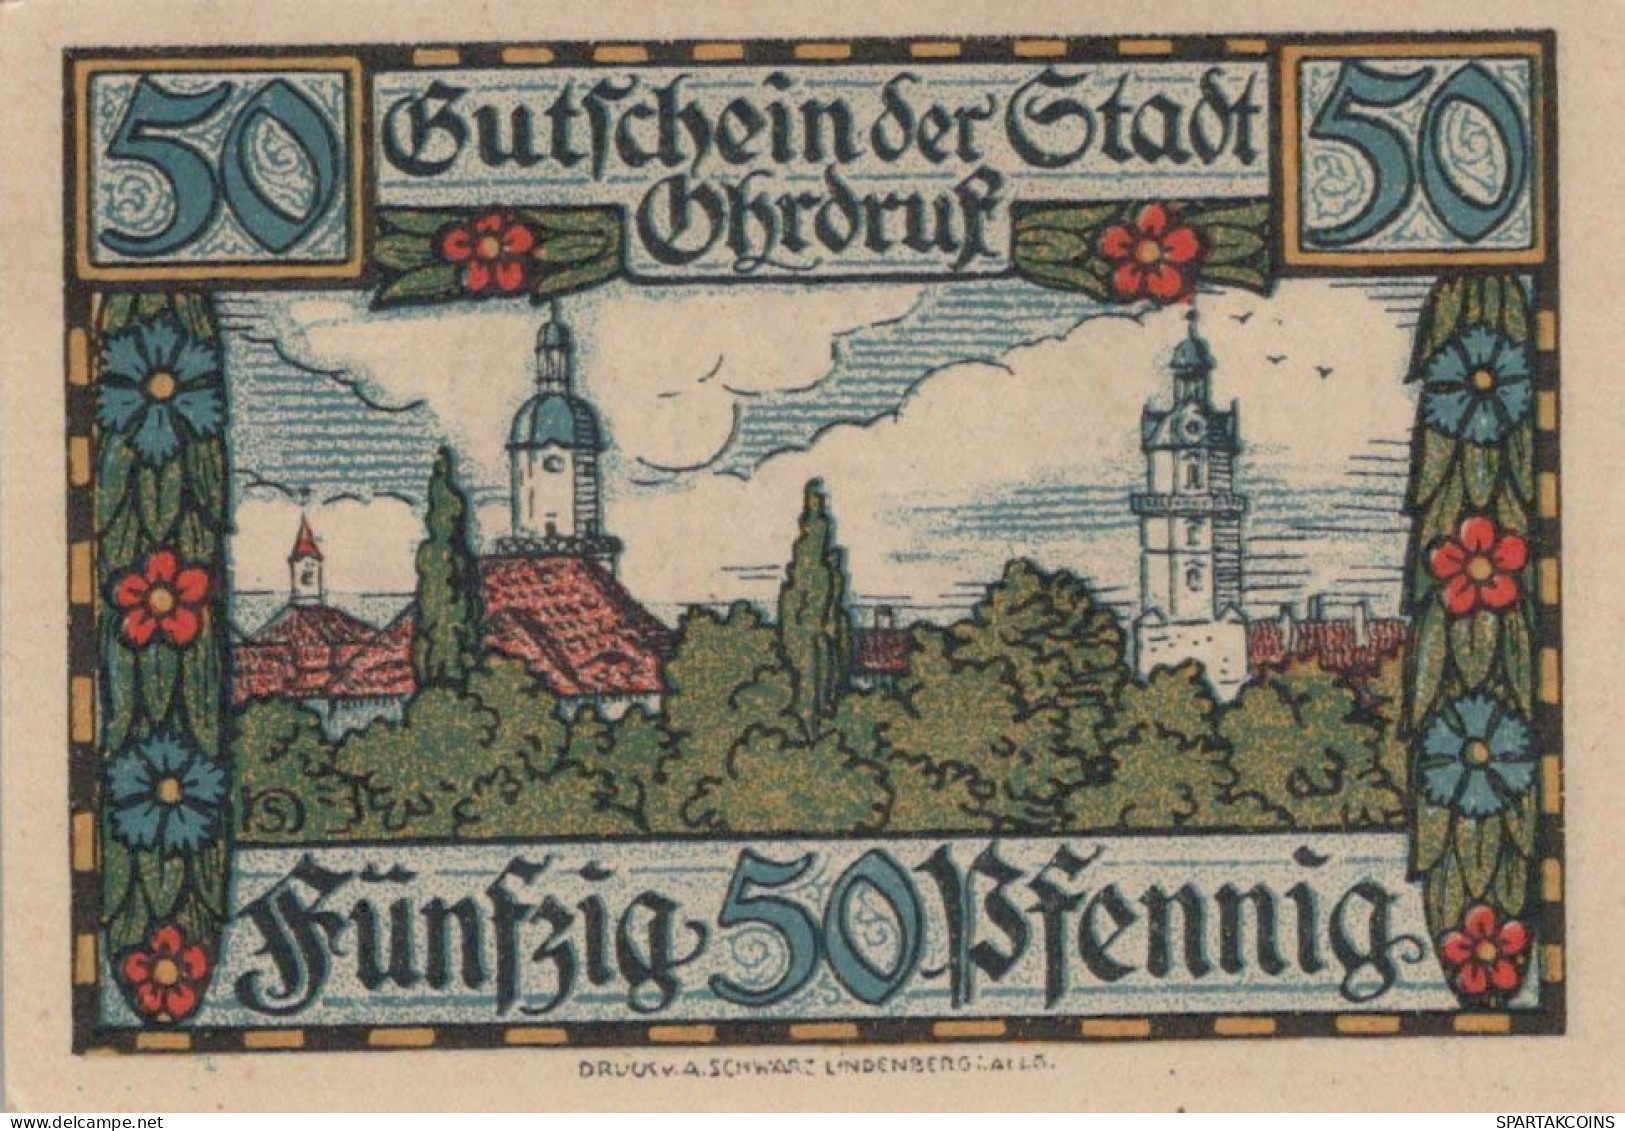 50 PFENNIG 1921 Stadt OHRDRUF Saxe-Coburg And Gotha UNC DEUTSCHLAND #PJ072 - [11] Local Banknote Issues